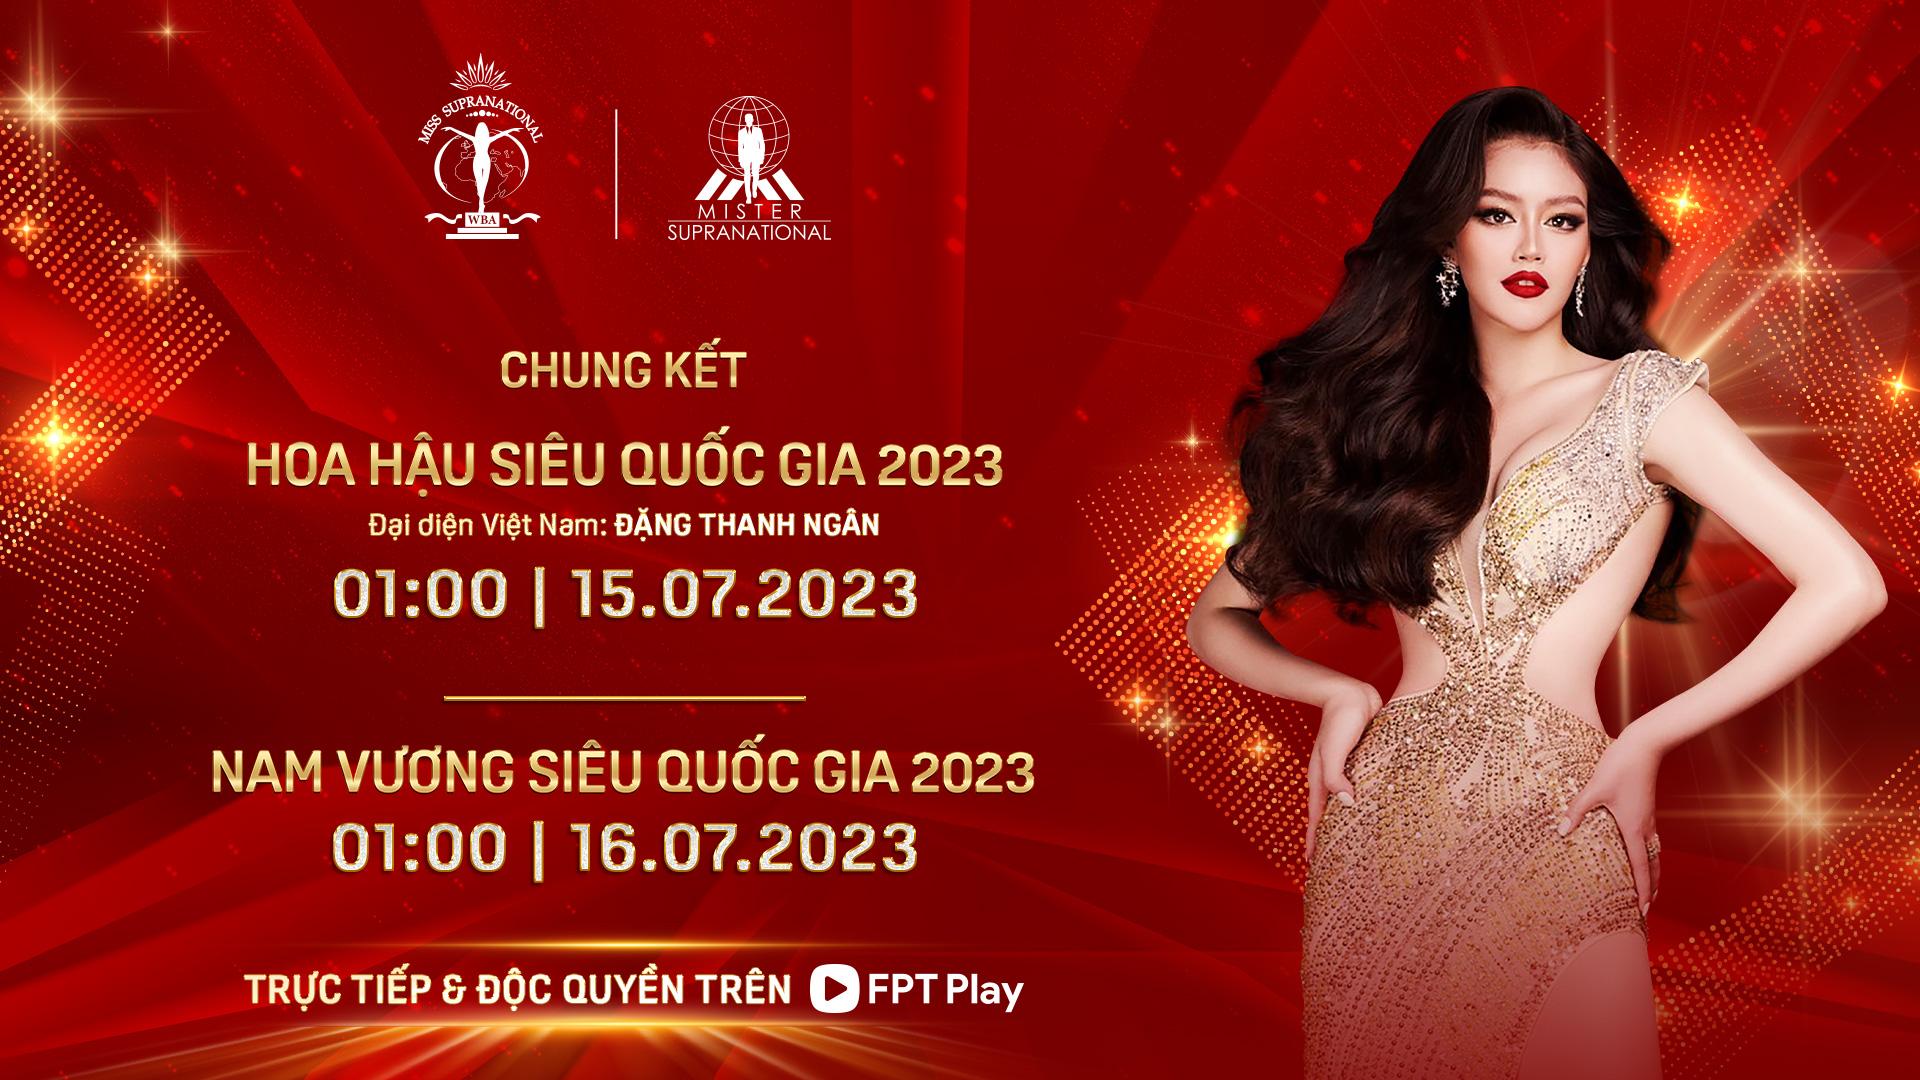 Ủng hộ đại diện Việt Nam tại chung kết Hoa hậu Siêu quốc gia 2023 trên FPT Play - Ảnh 5.